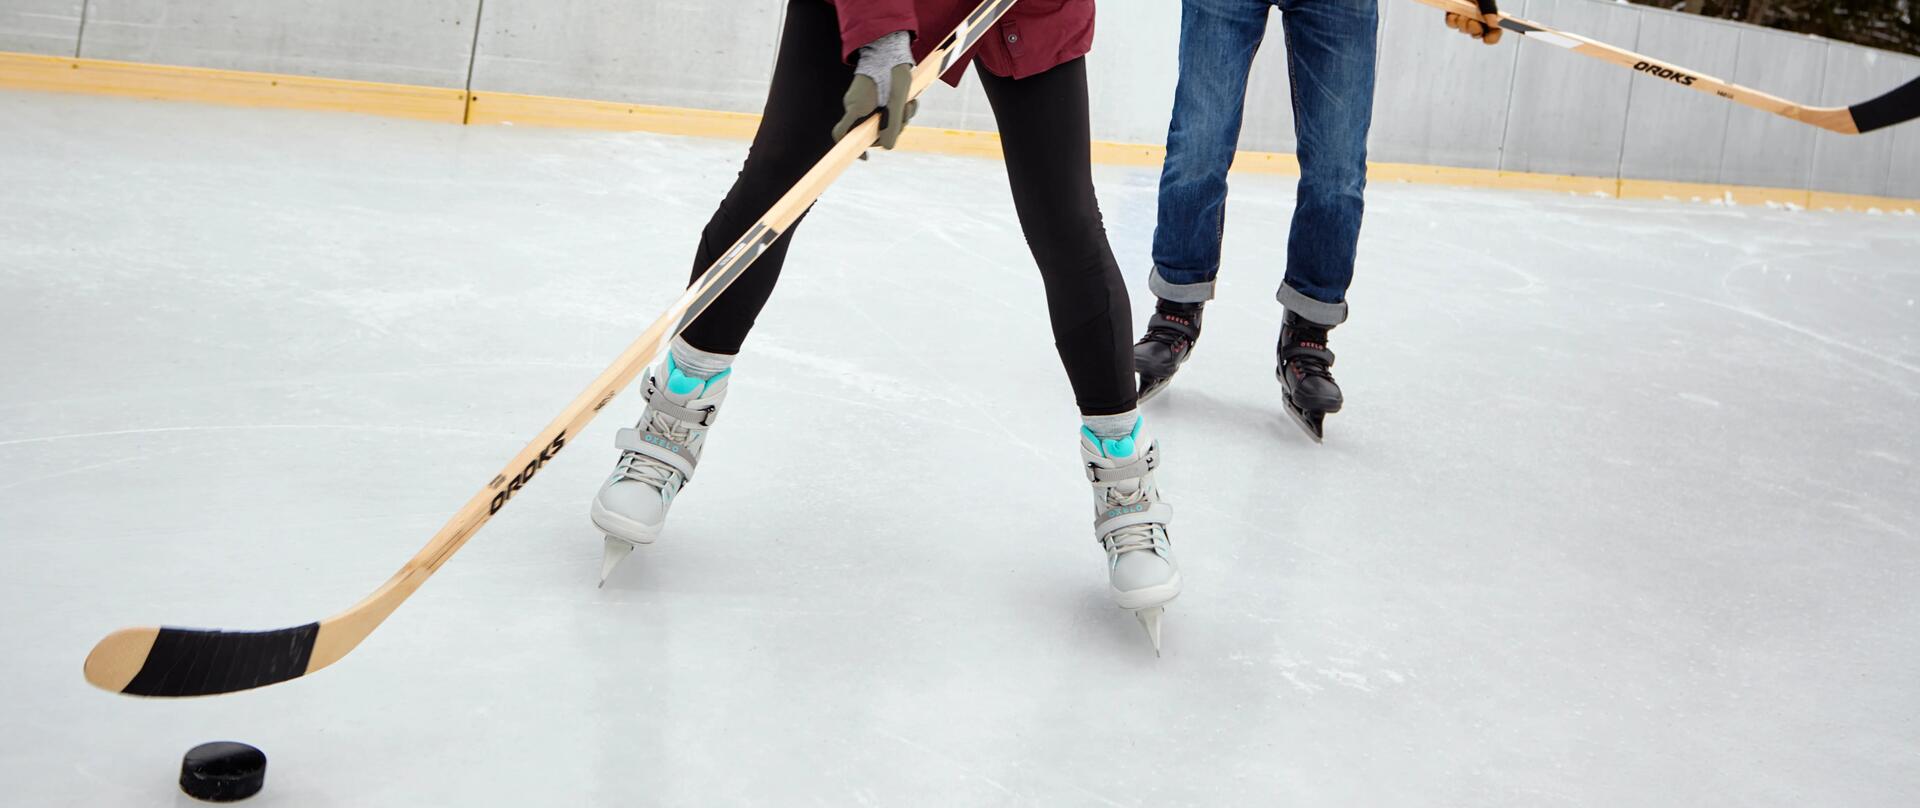 2 osoby na lodowisku grają w hokeja kijami hokejowymi